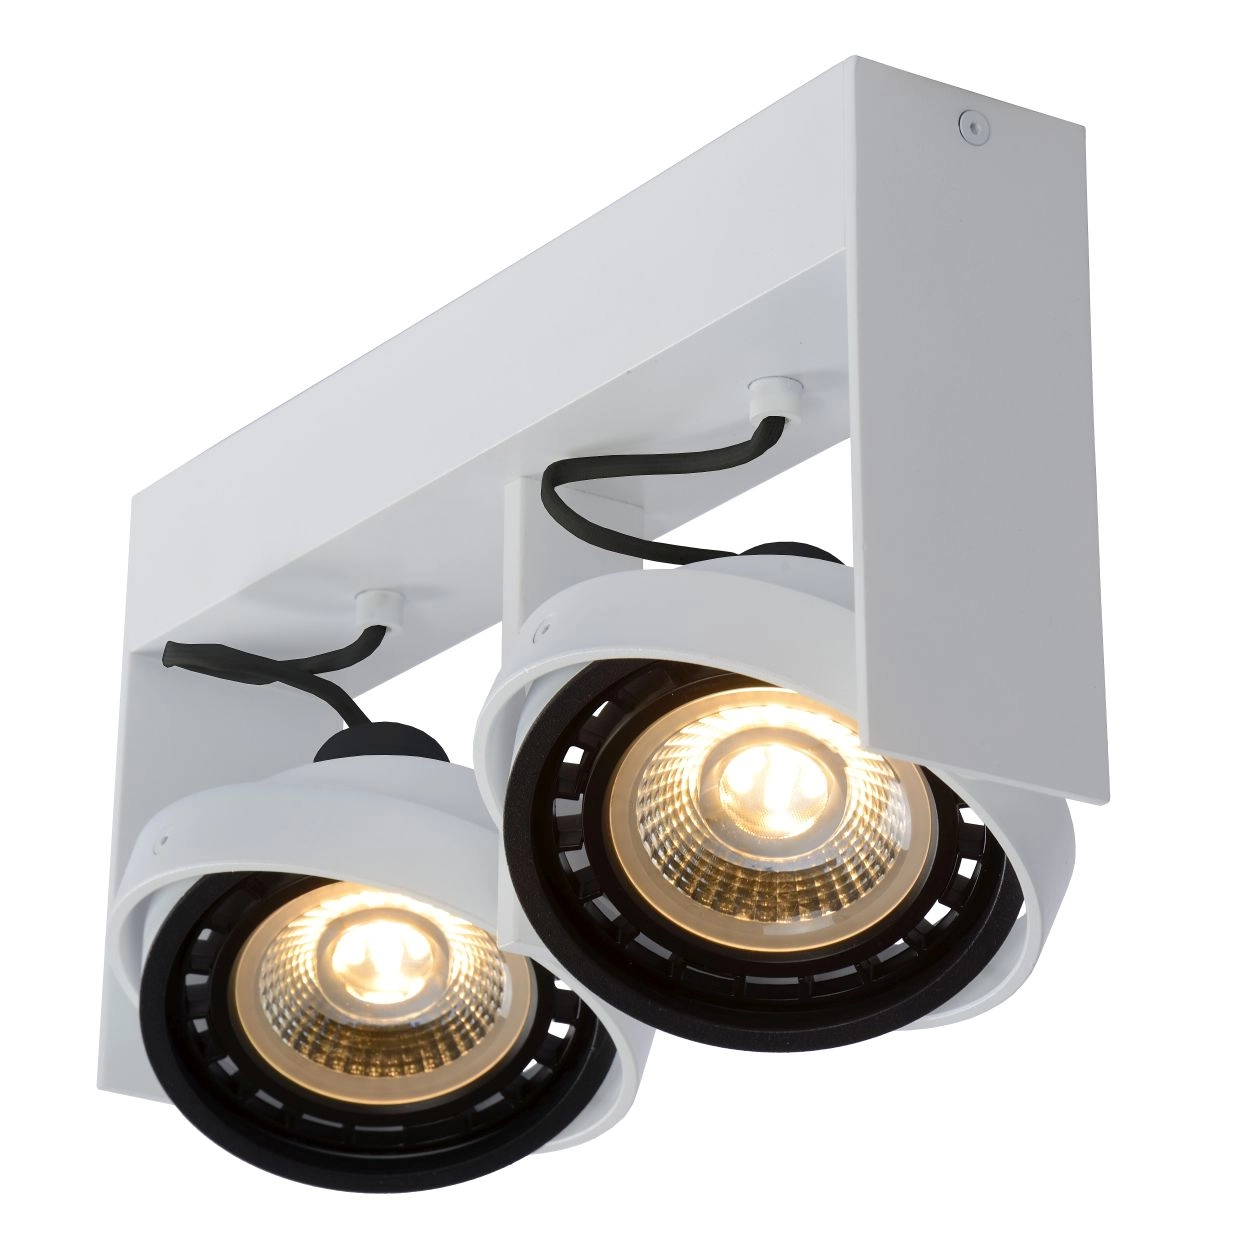 LU 22969/24/31 Lucide GRIFFON - Ceiling spotlight - LED Dim to warm - GU10 (ES111) - 2x12W 2200K/300